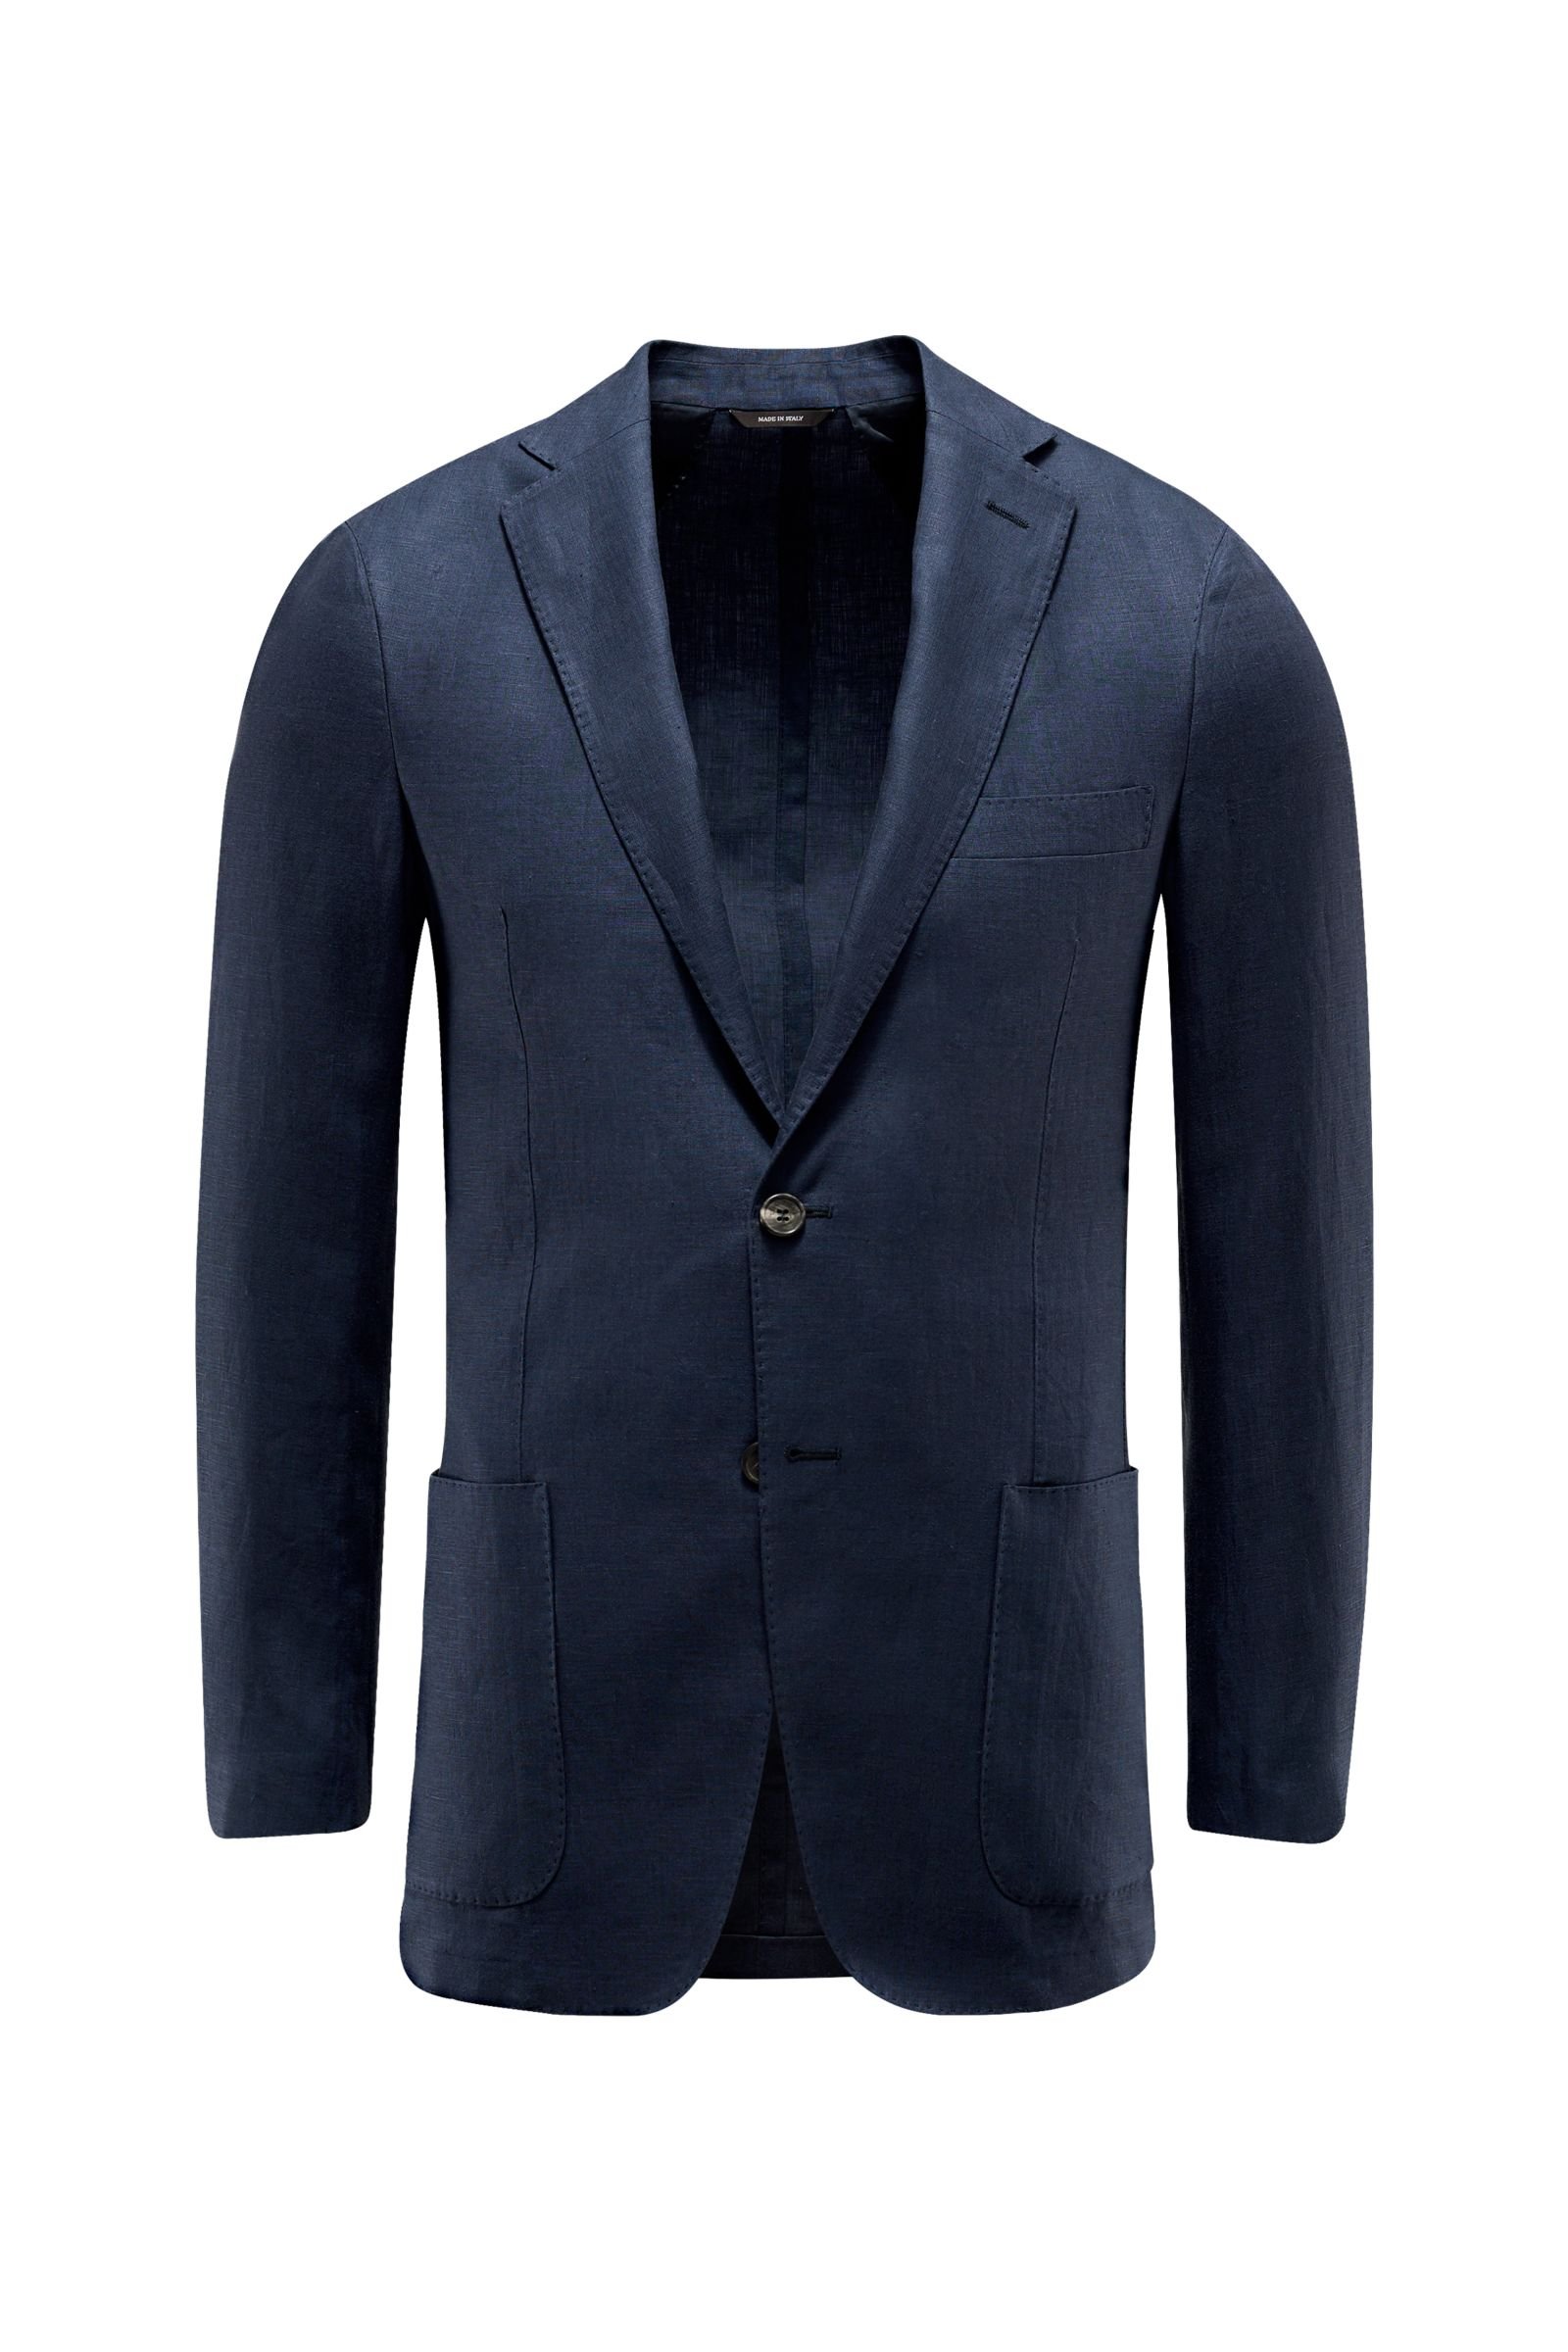 Smart-casual linen jacket ‘Andorra’ navy